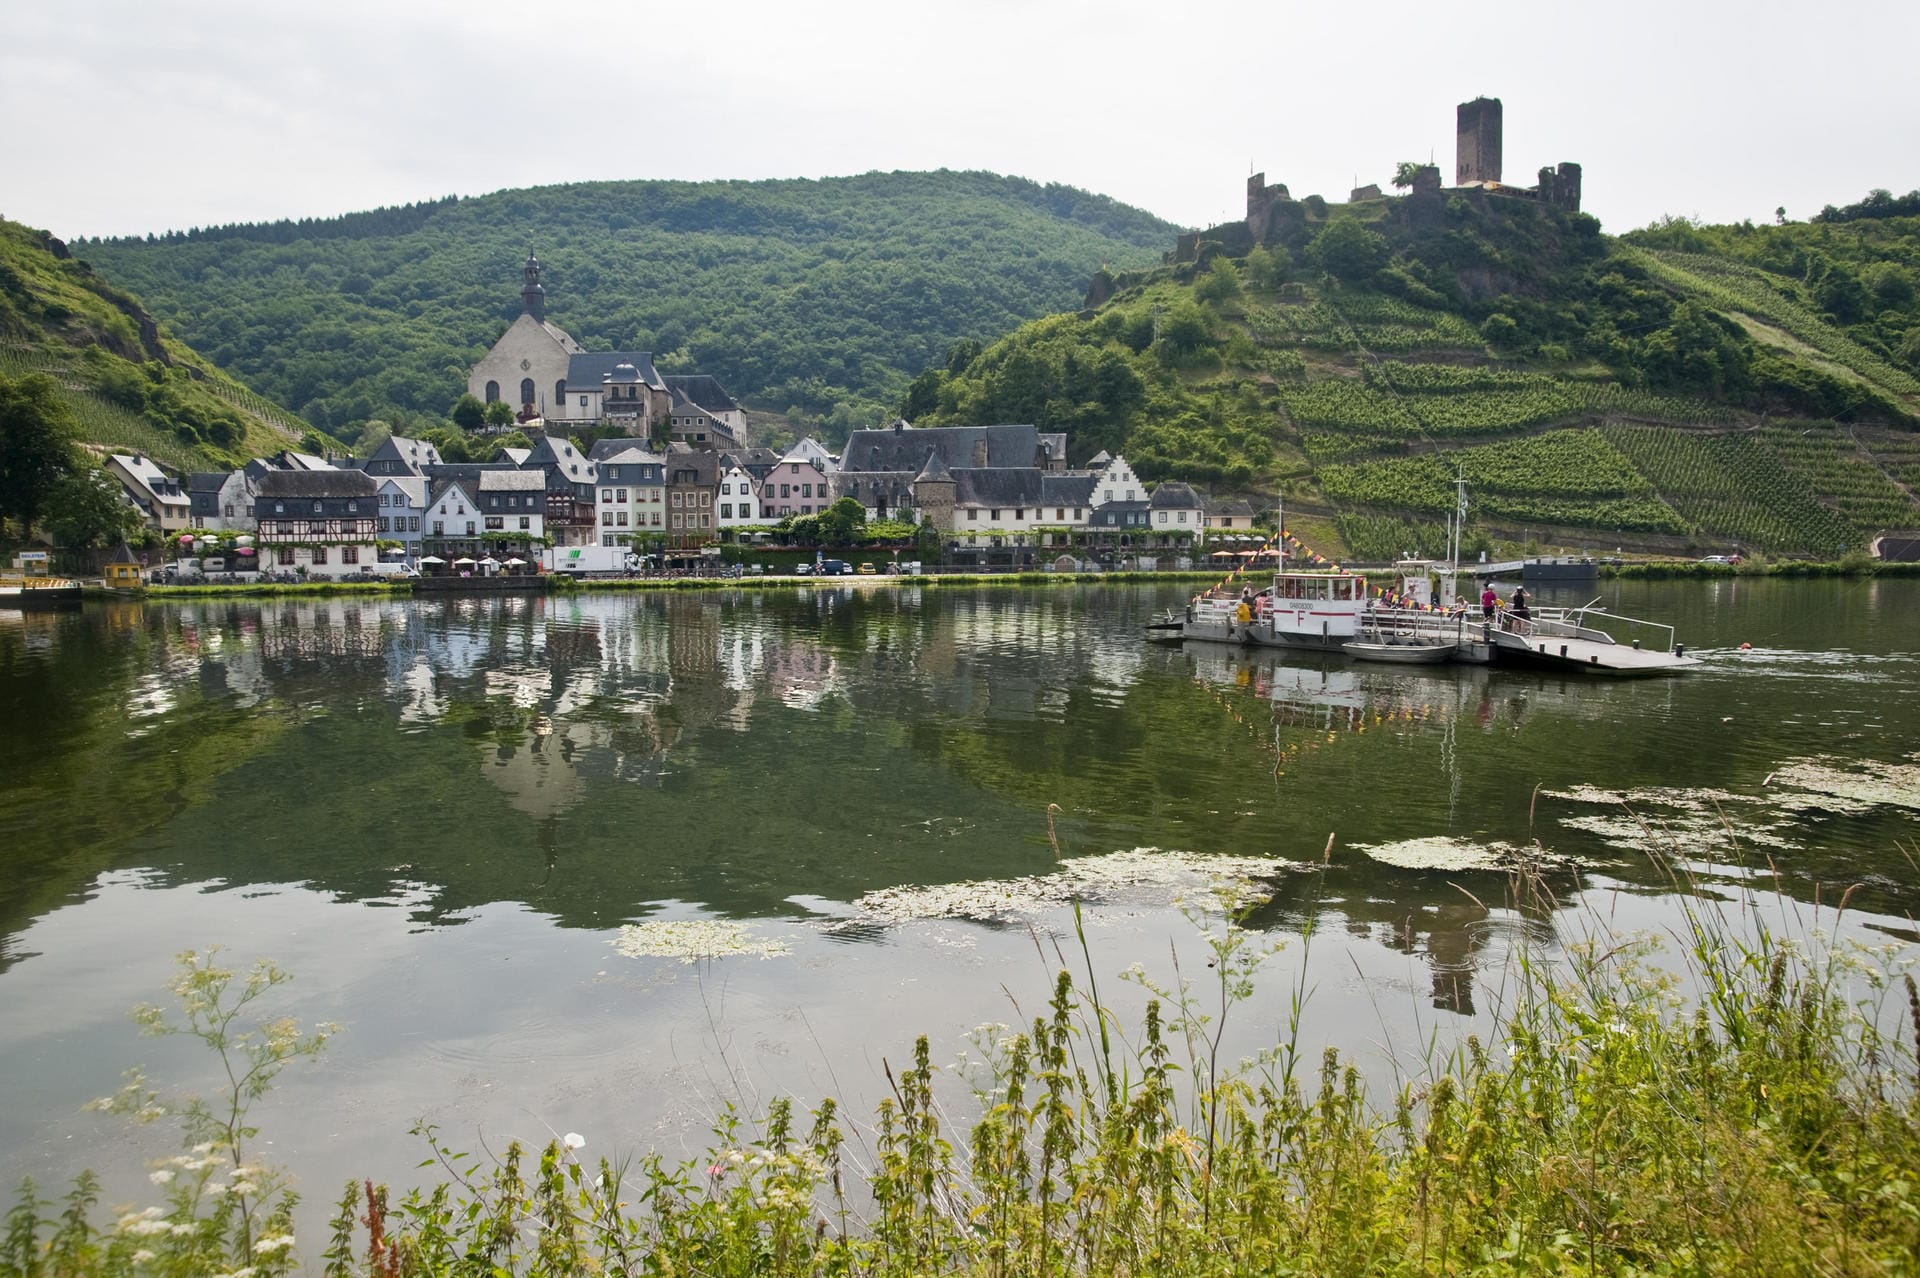 Blick auf die Ortschaft Beilstein mit der Burgruine Metternich. Darunter die aus der Mosel hervorsprießenden, steilen Weinberghänge.